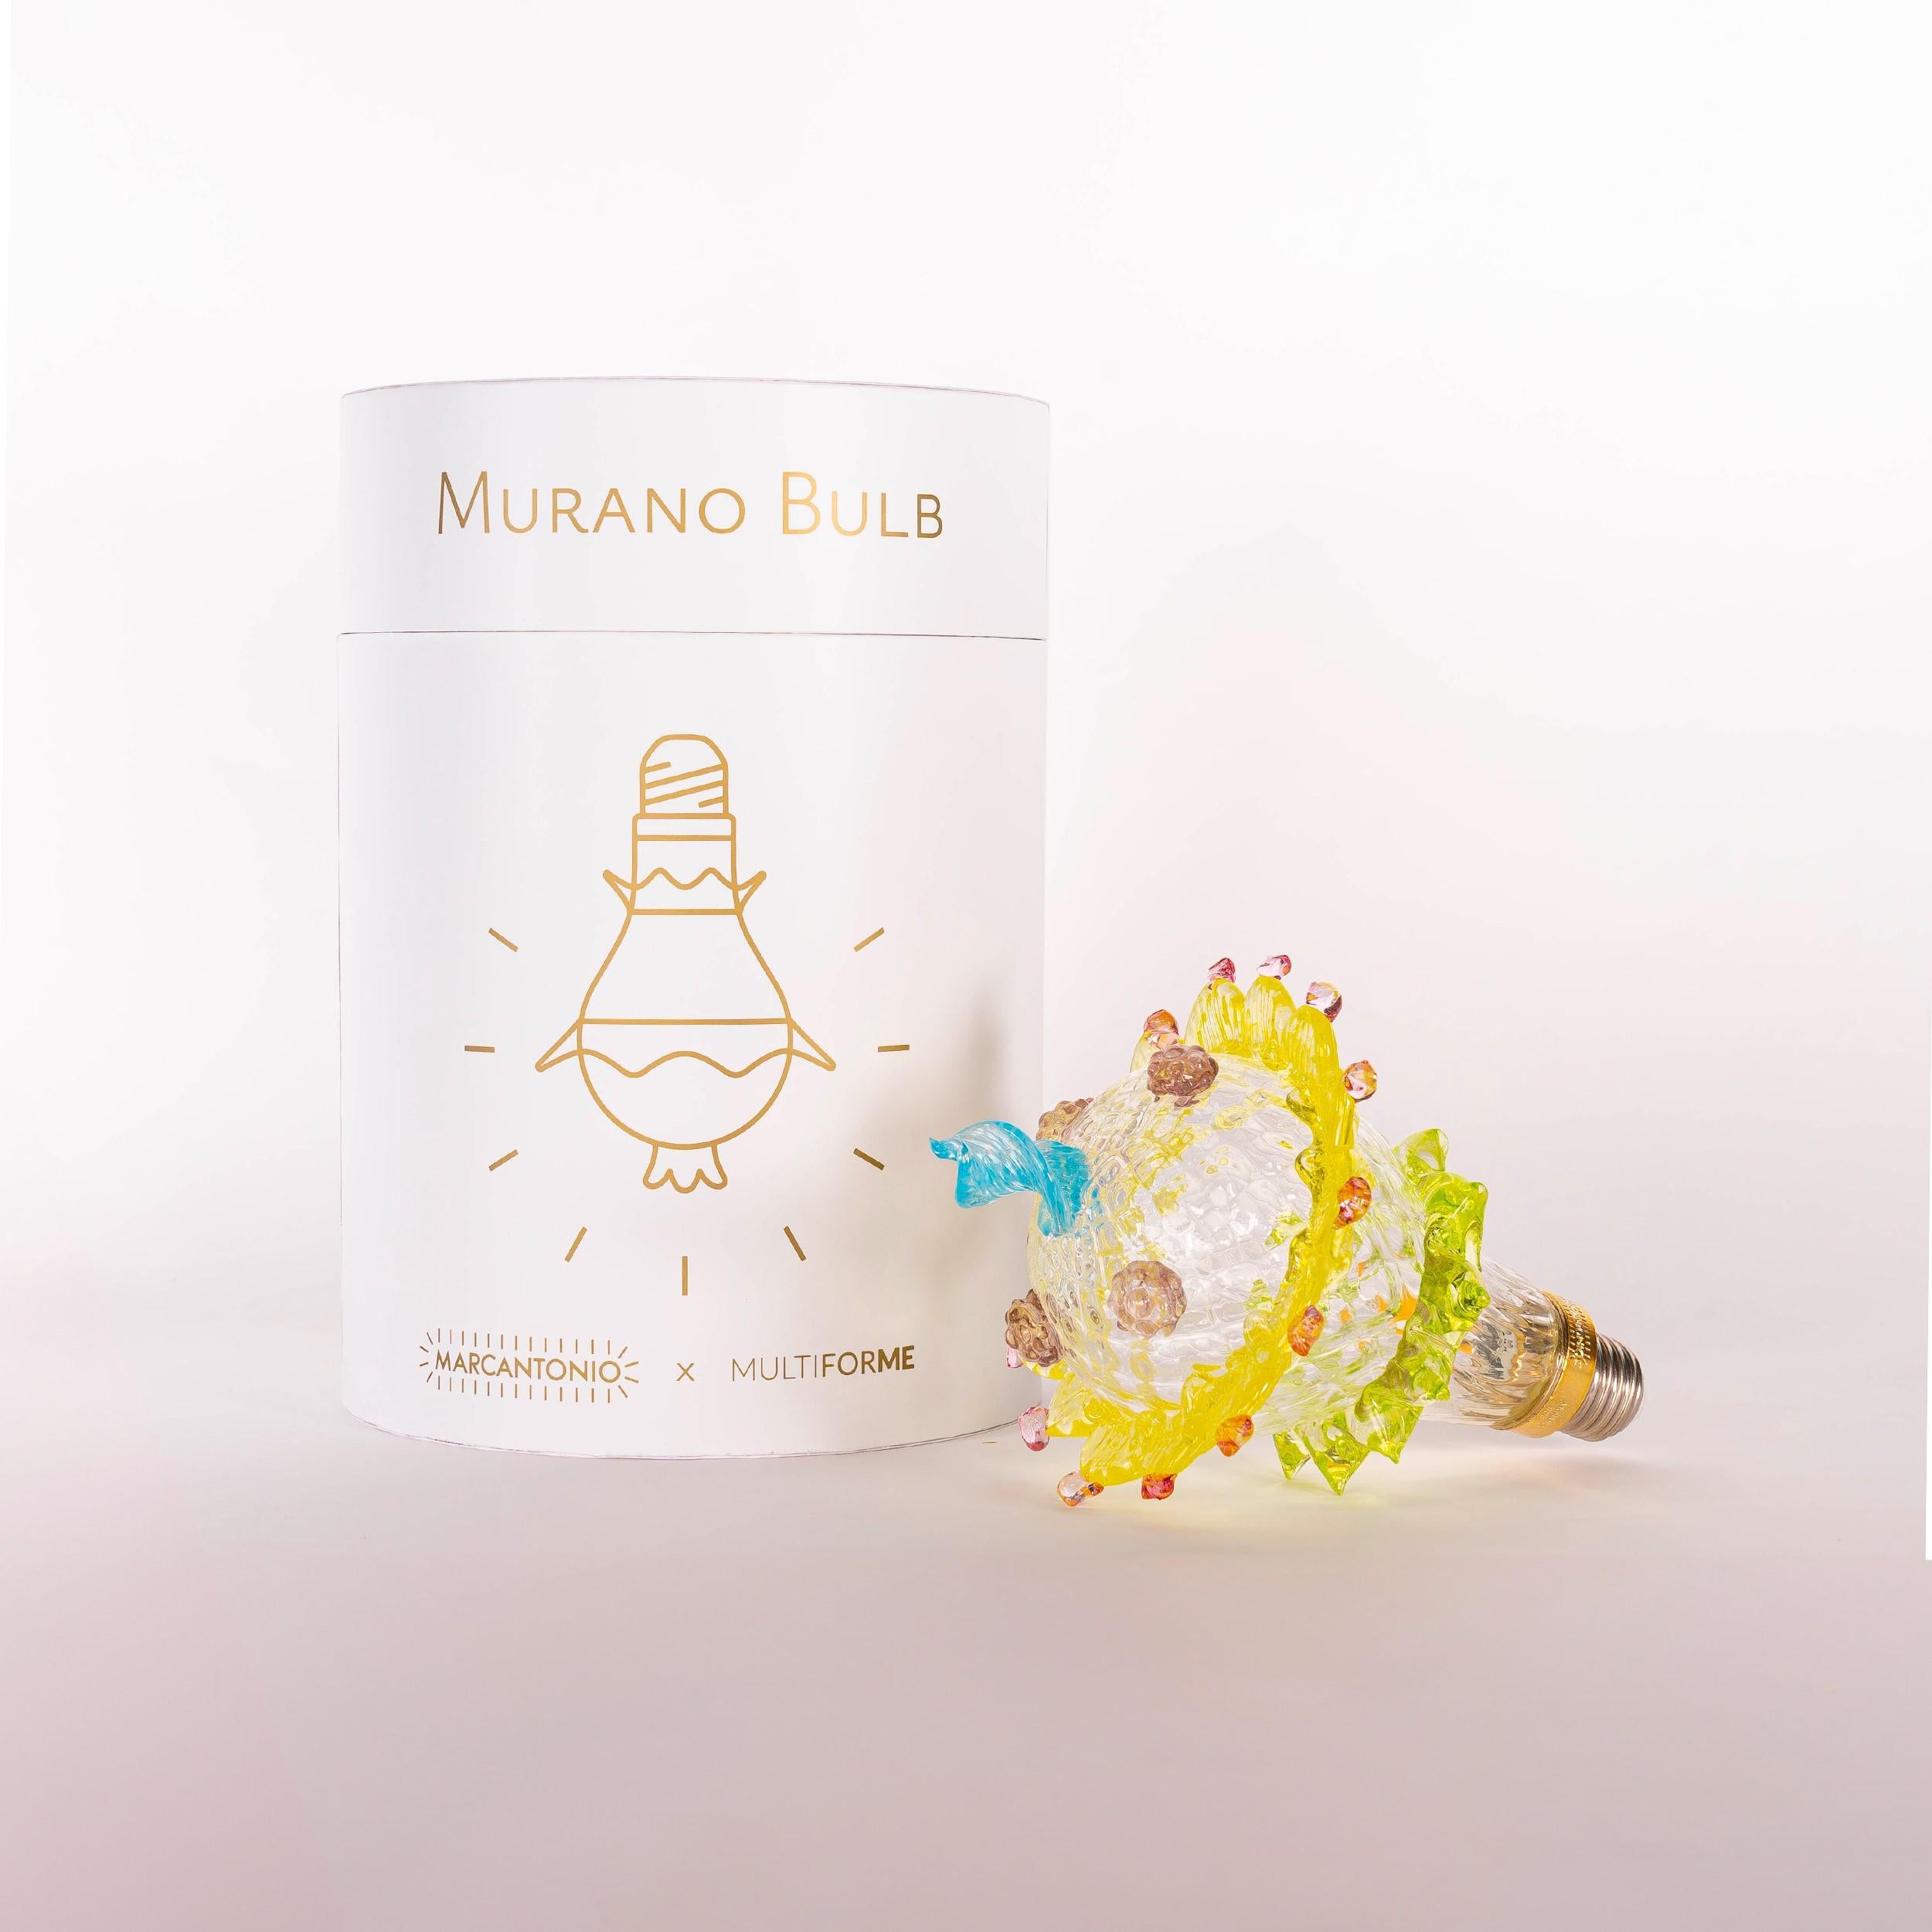 Die Kunst des Murano-Glases trifft auf die Ikonizität einer Glühbirne. Zusammen ergeben sie ein brillantes Möbelstück: eine Glühbirne, einen Kronleuchter oder was immer Sie sich vorstellen können.

Murano Bulb, Ihr Glühbirnen-Moment.

Das von